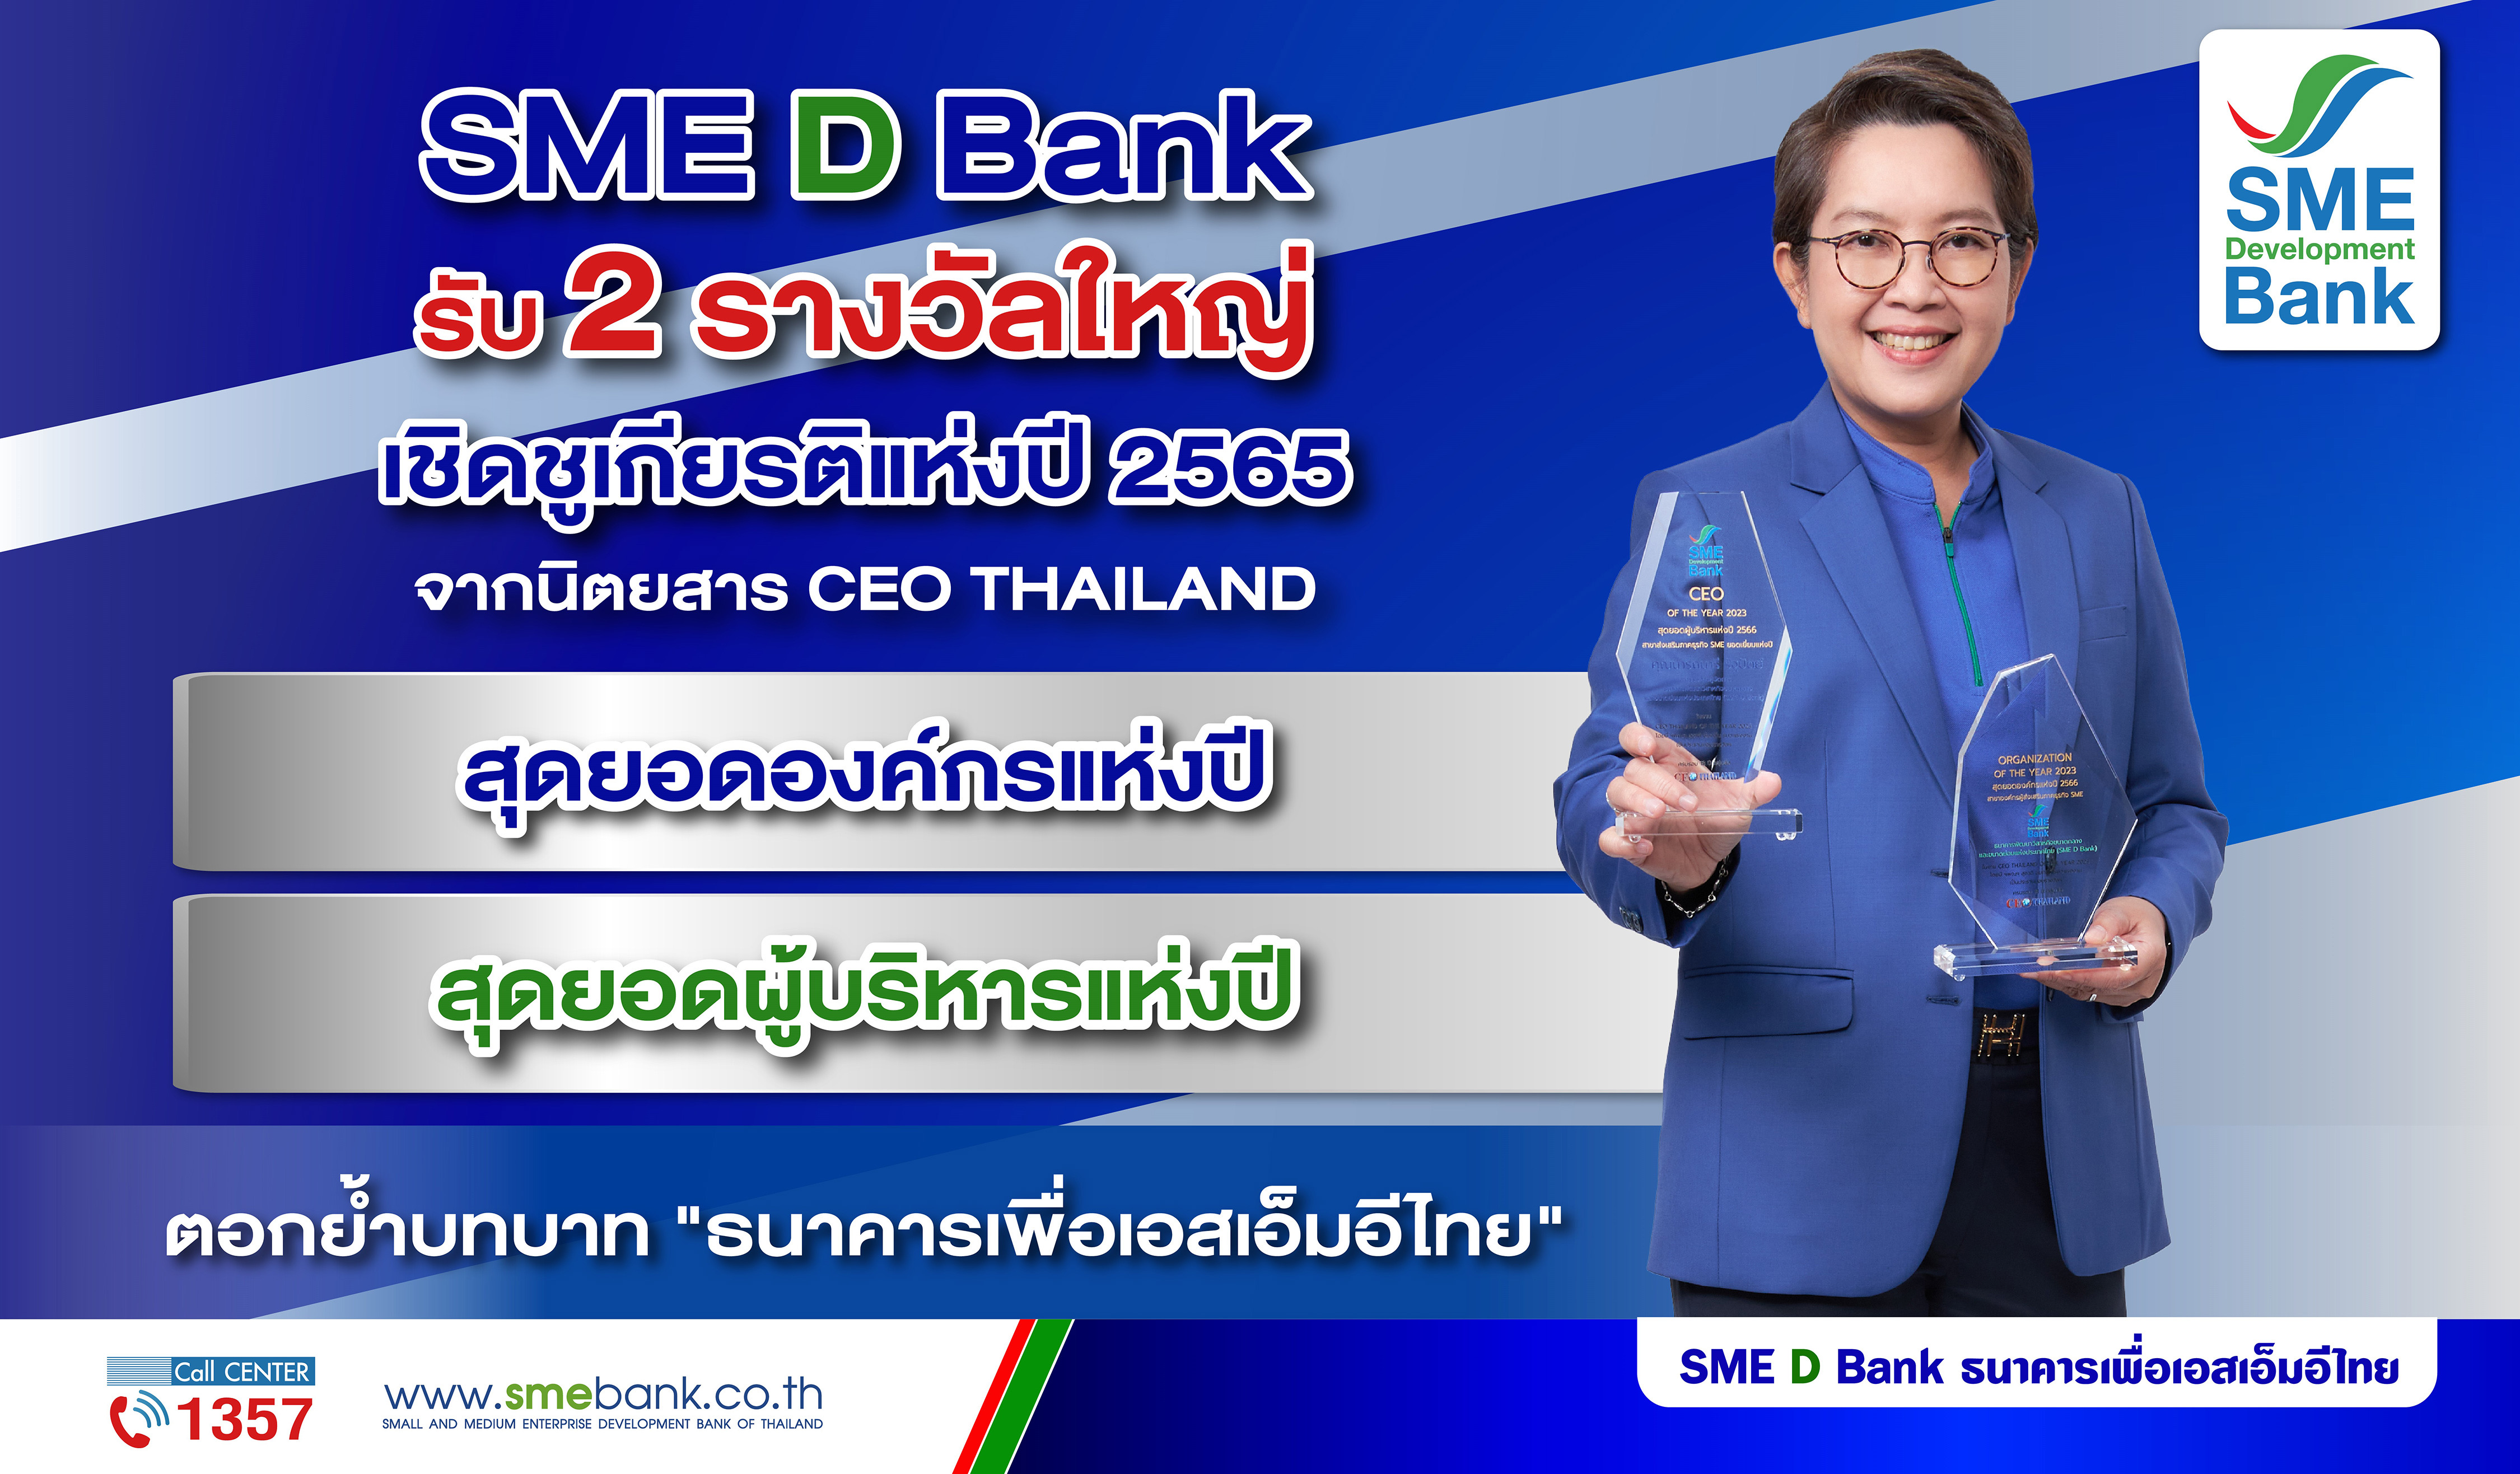 SME D Bank รับ 2 รางวัลใหญ่เชิดชูเกียรติแห่งปี 2565 สุดยอดองค์กรและผู้บริหาร’ ตอกย้ำบทบาท ‘ธนาคารเพื่อเอสเอ็มอีไทย’